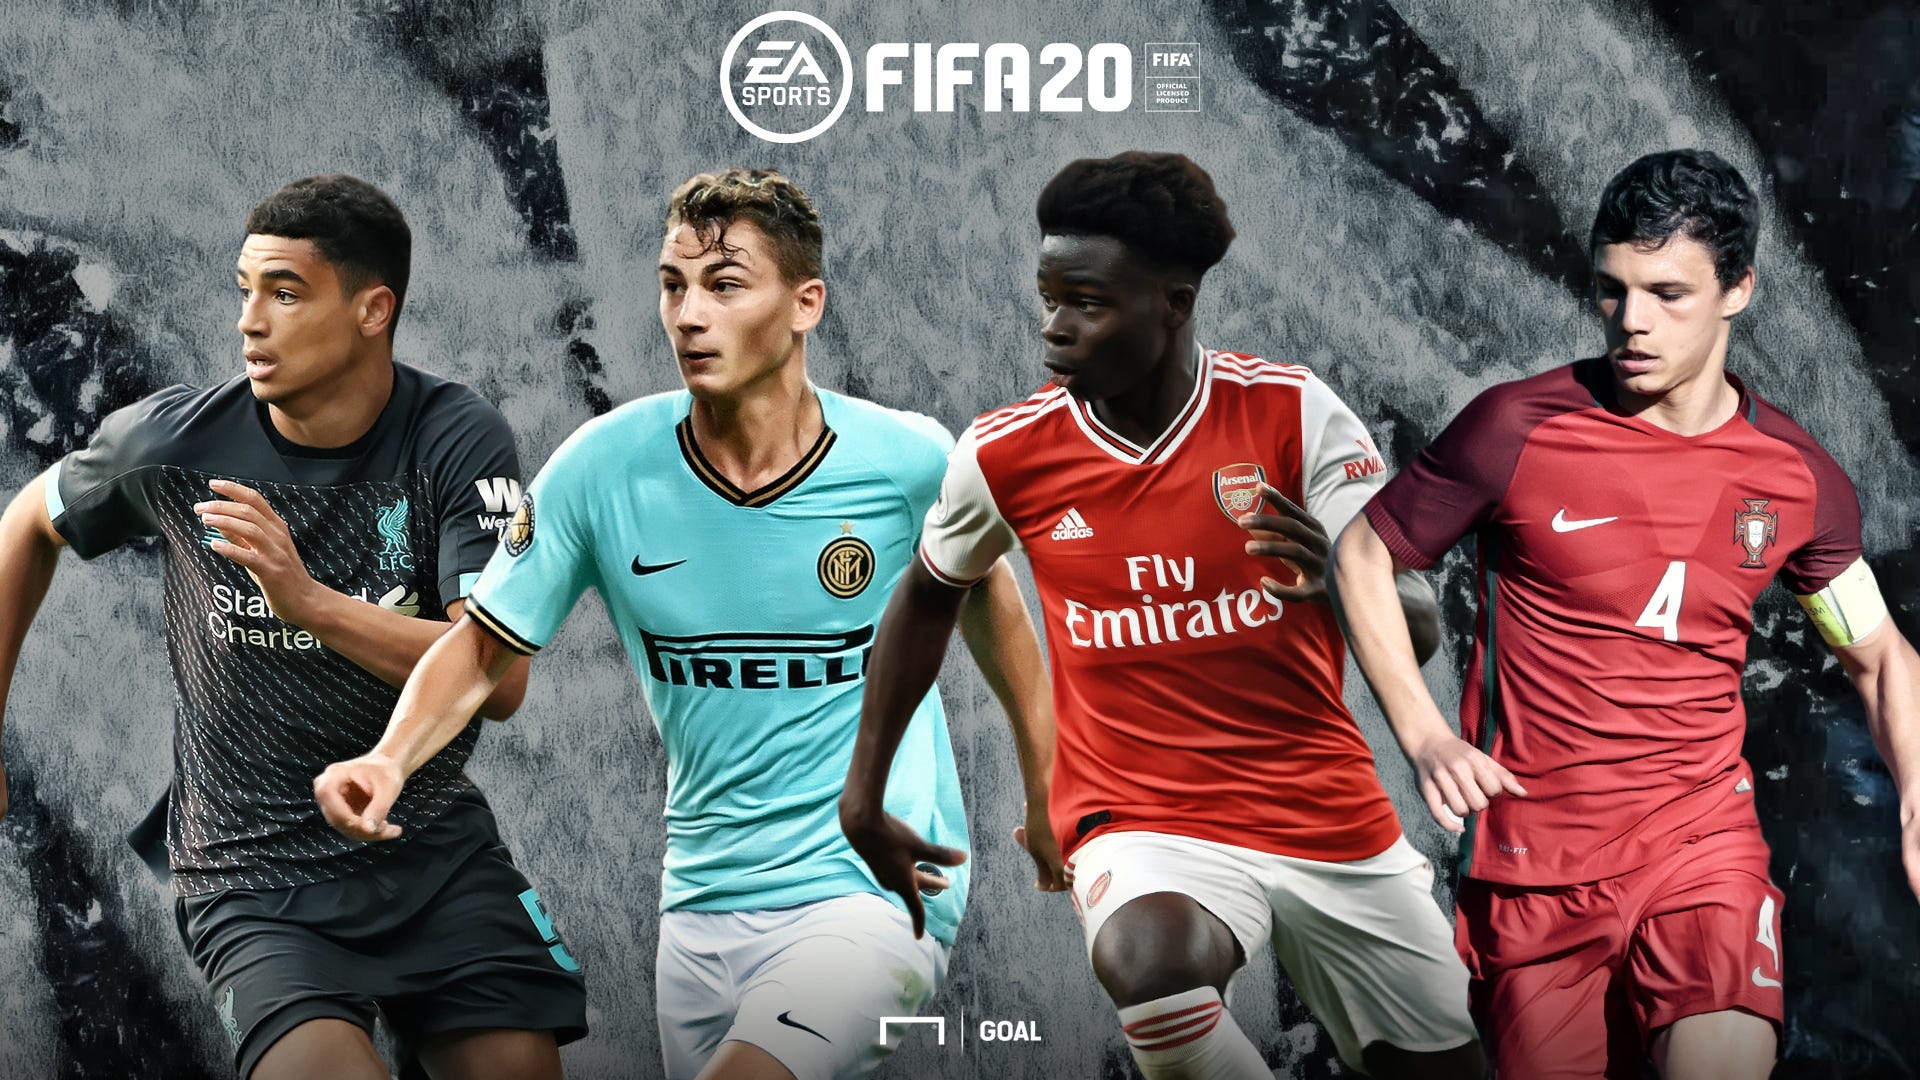 FIFA 23: Game anuncia “Team Of The Season” da Major League Soccer